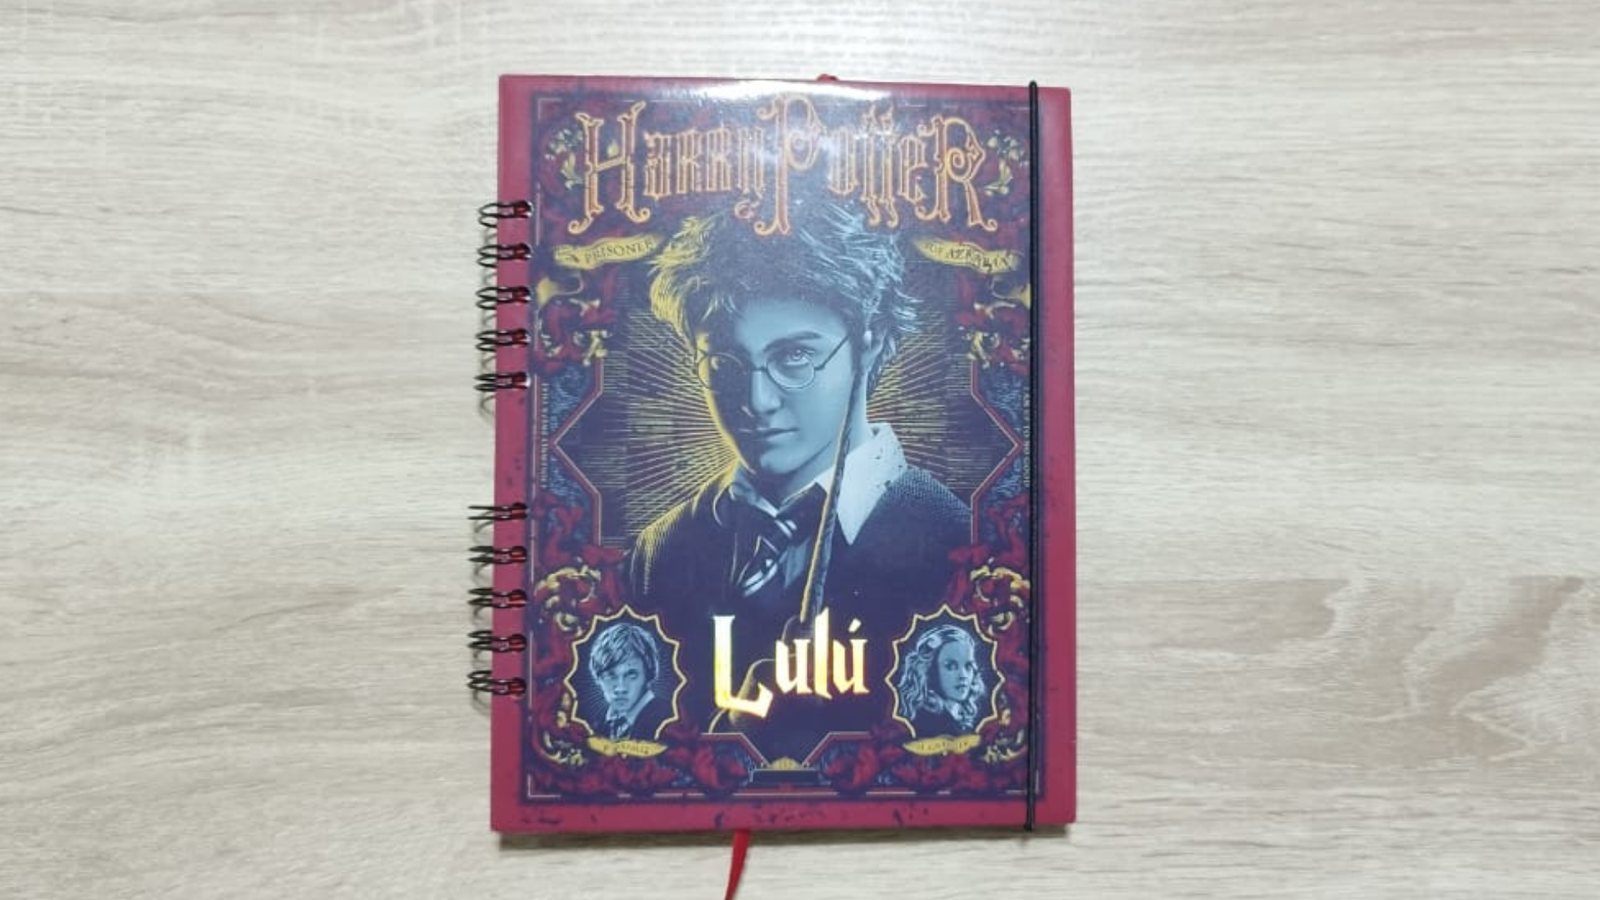 libreta personalizada Harry Potter